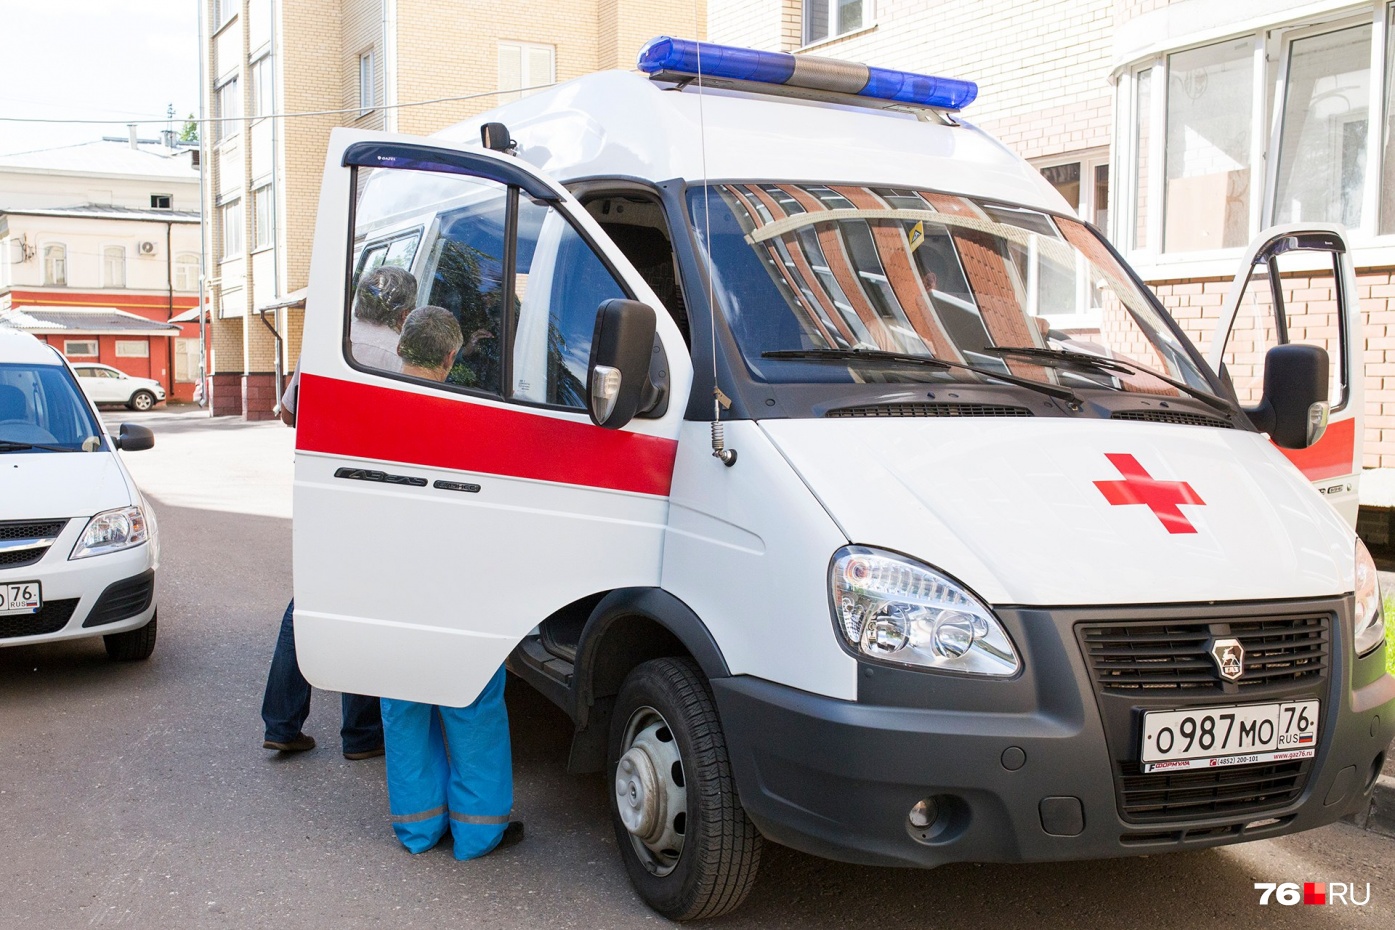 «Все бригады — в одном месте»: в Ярославской области закрывают станцию скорой помощи